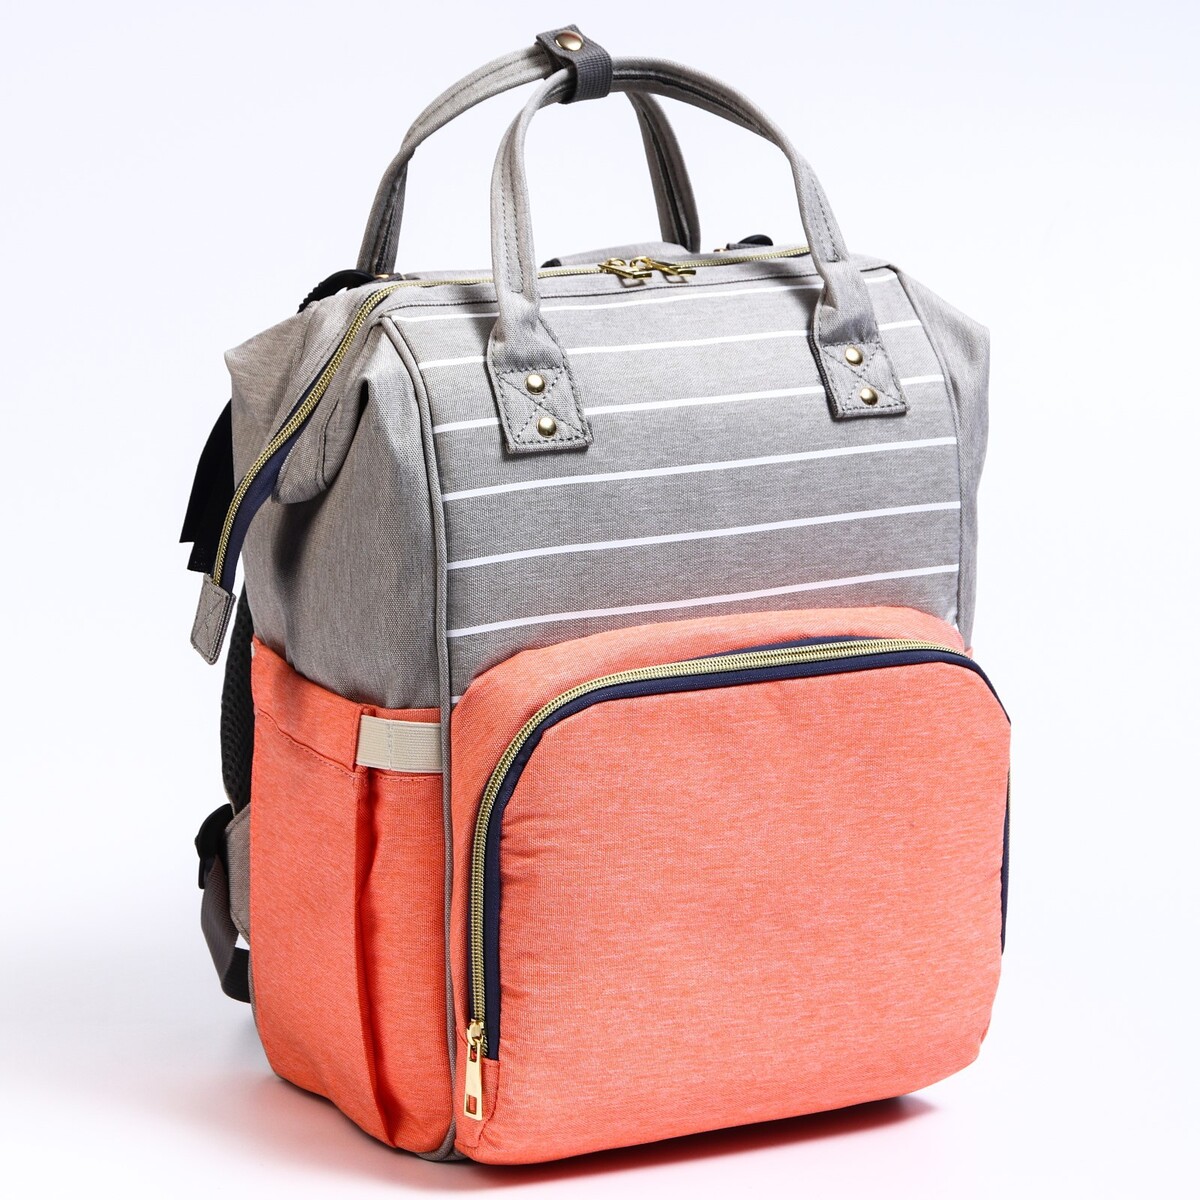 Рюкзак женский с термокарманом, термосумка - портфель, цвет серый/розовый рюкзак женский с термокарманом термосумка портфель бирюзовый